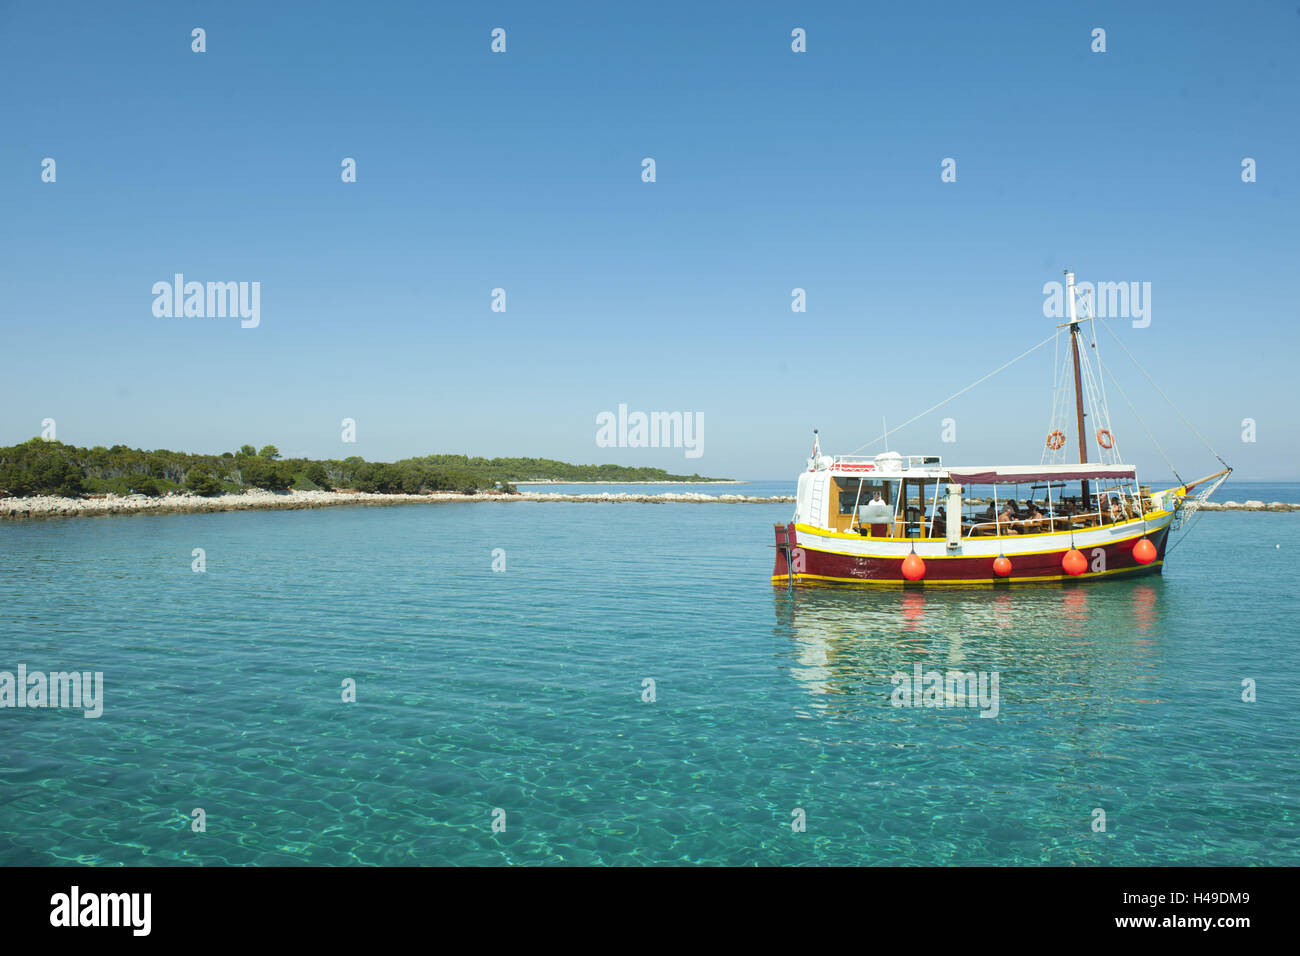 Croatia, island Losinj, Veli Losinj, boat excursion, Stock Photo